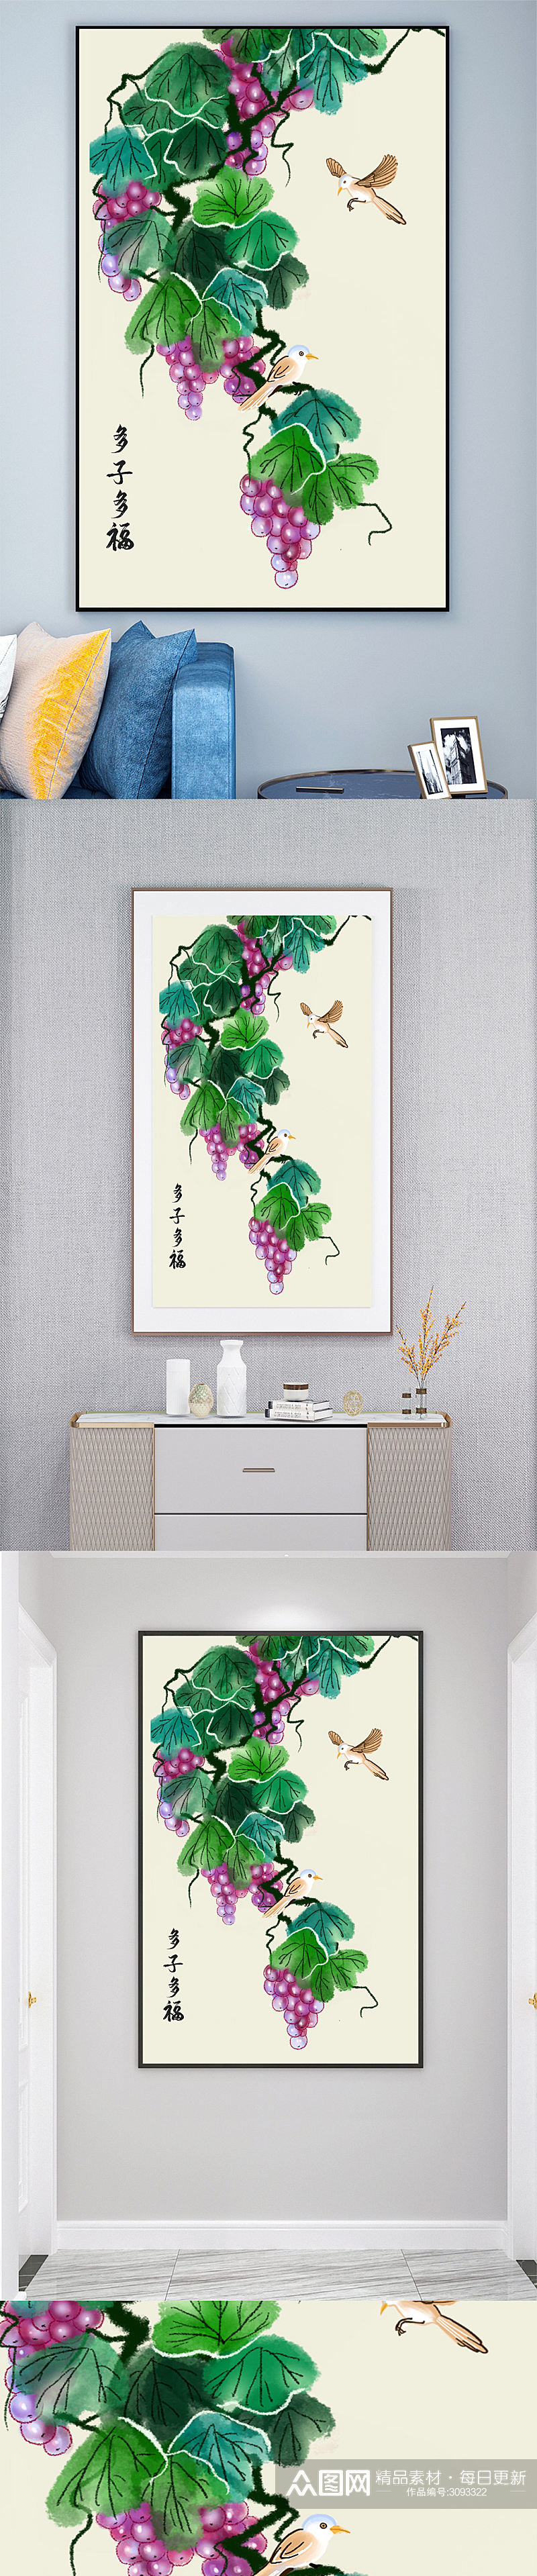 中式多子多福葡萄水果壁画素材